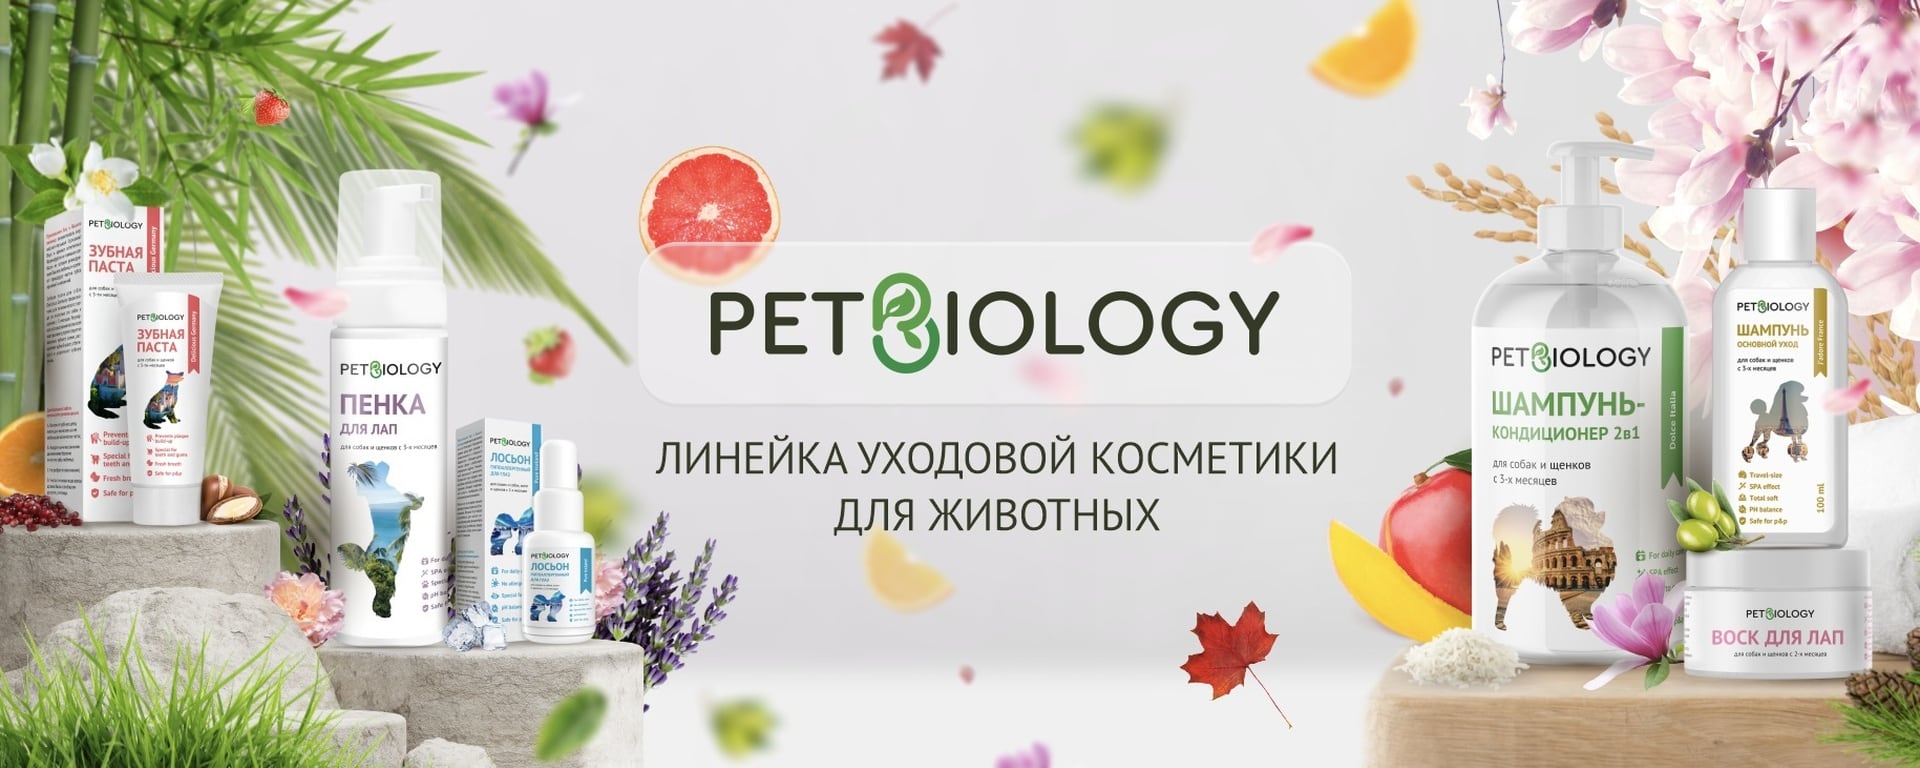 купить средства ухода и гигиены для собак и кошек PetBiology с бесплатной доставкой в Калининграде